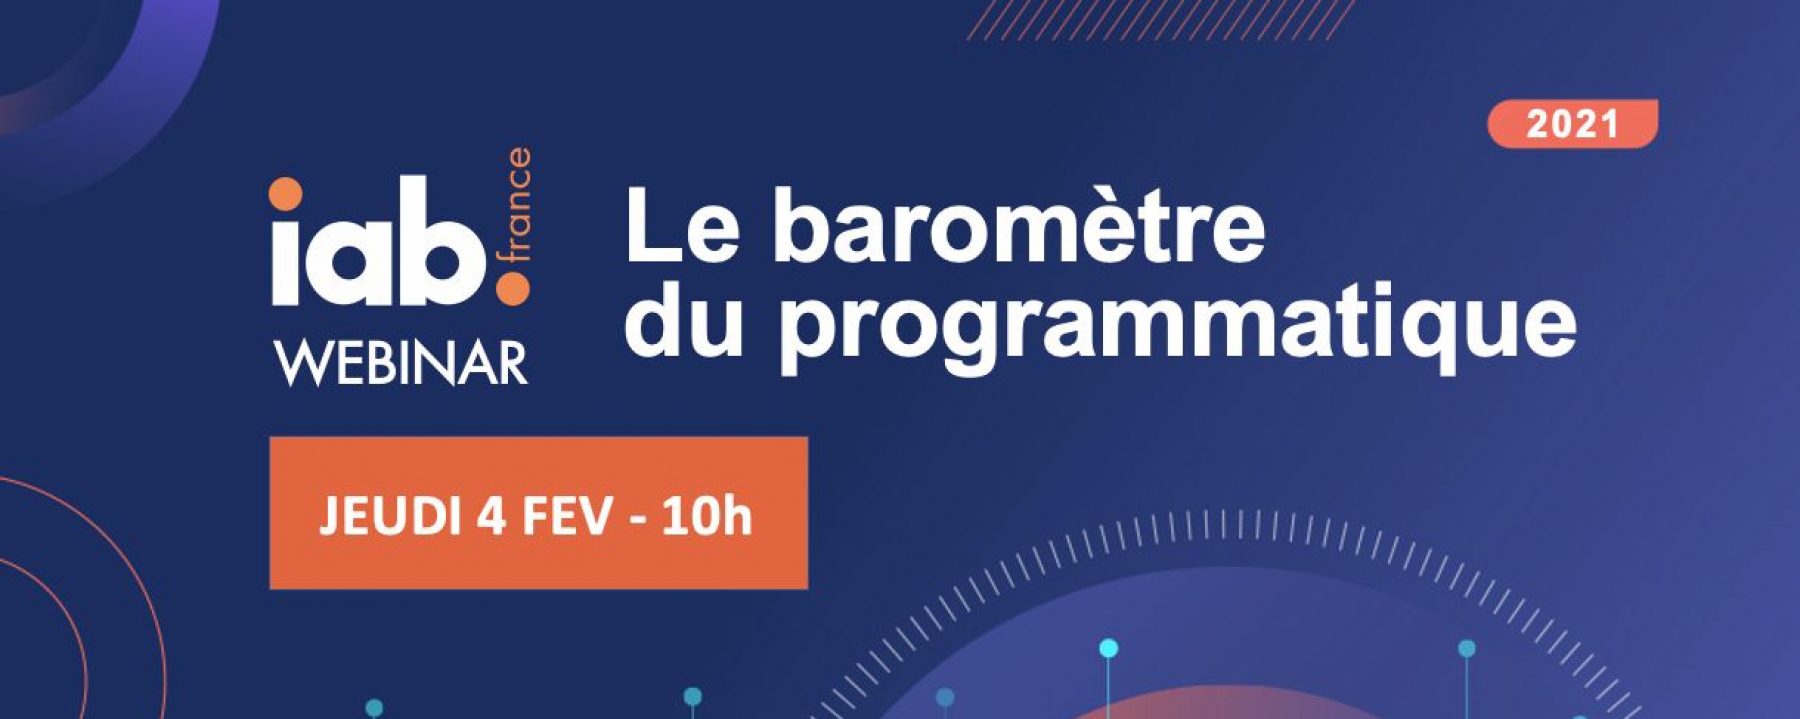 Le baromètre du programmatique, un webinar de IAB France organisé le 4 février